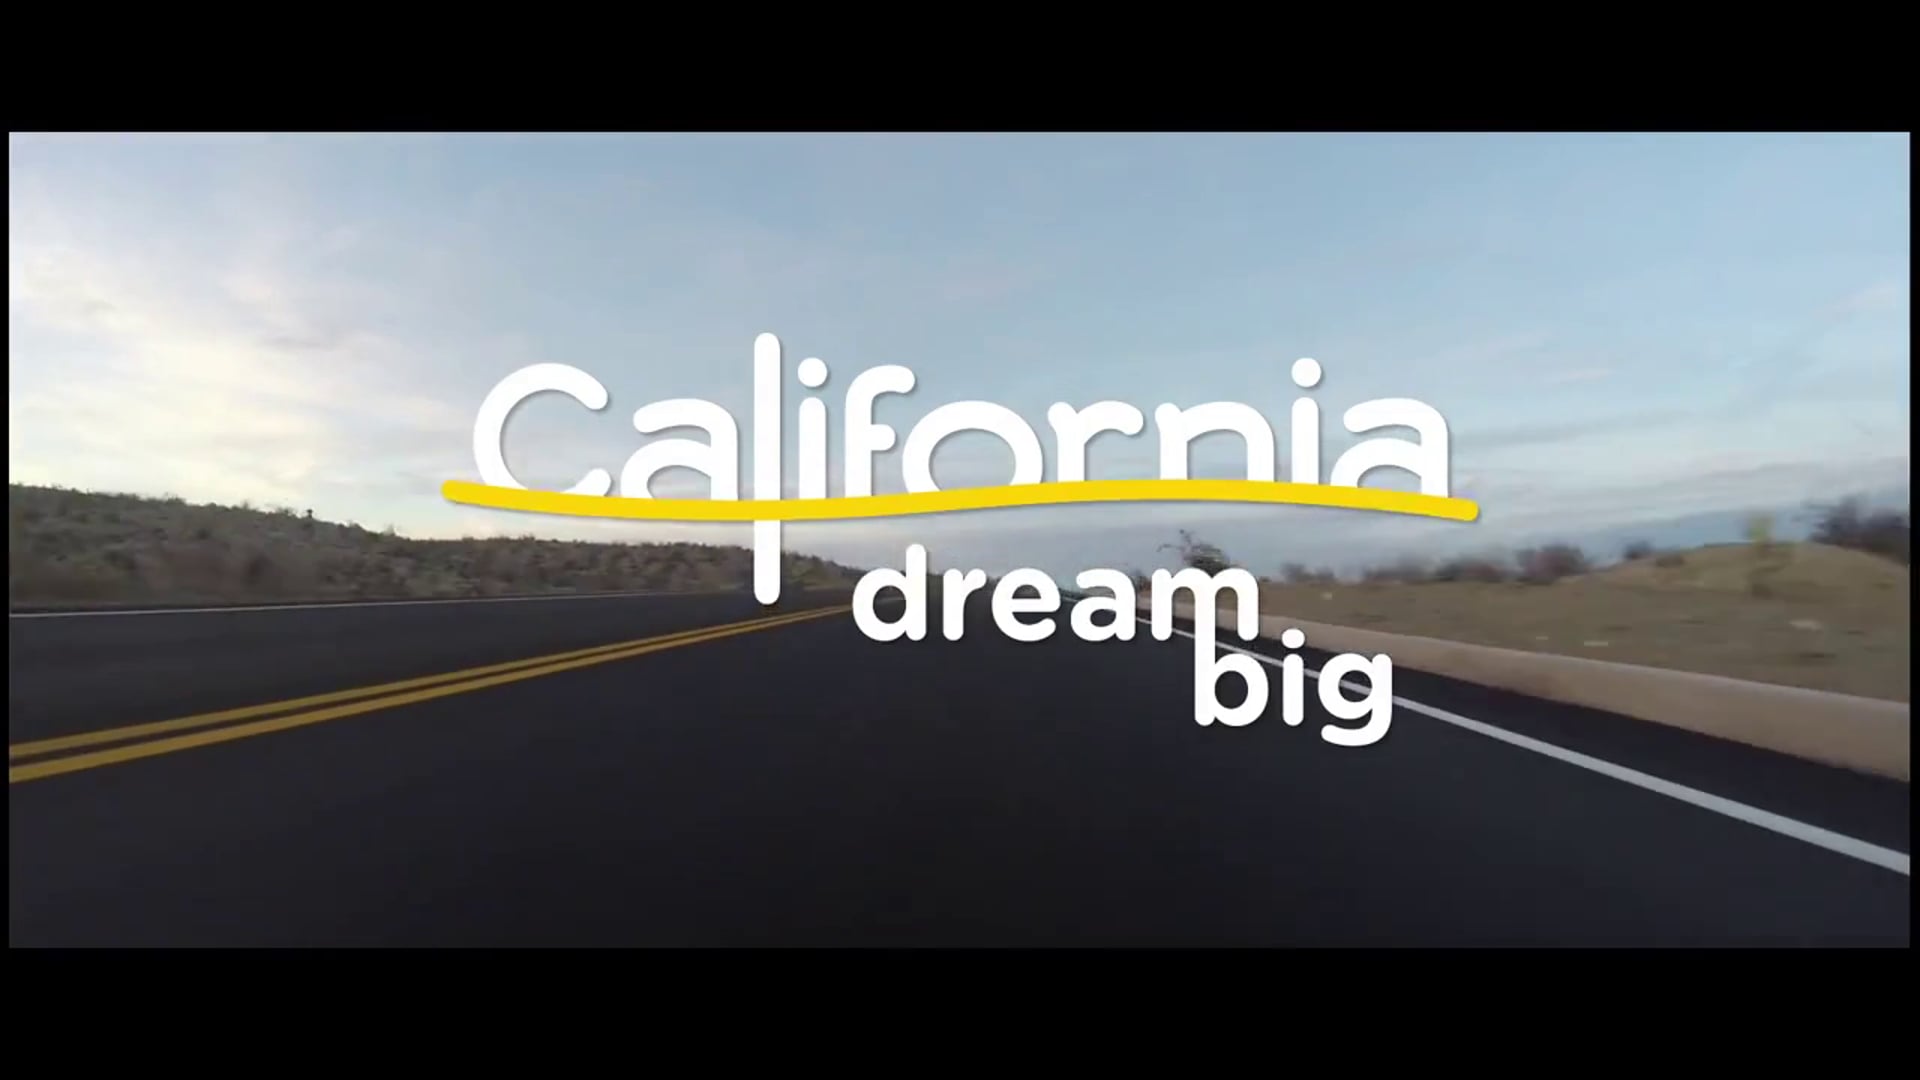 VISIT CALIFORNIA